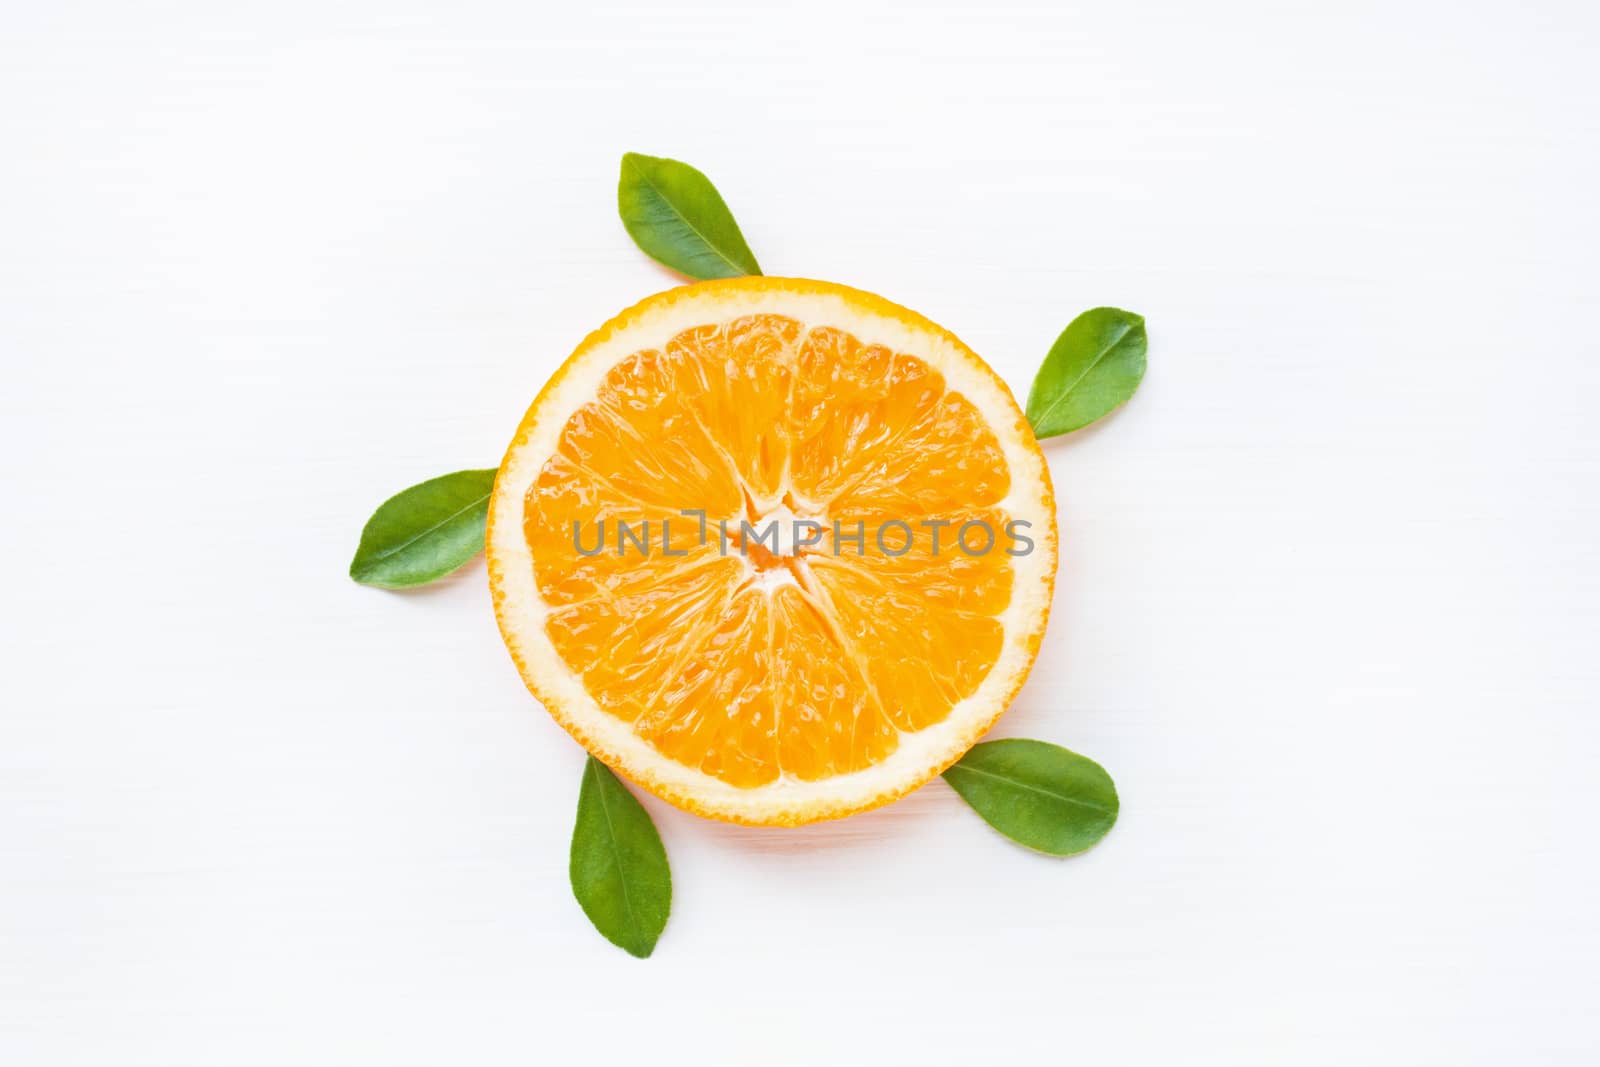 Slice of fresh orange  citrus fruit isolated on white background.